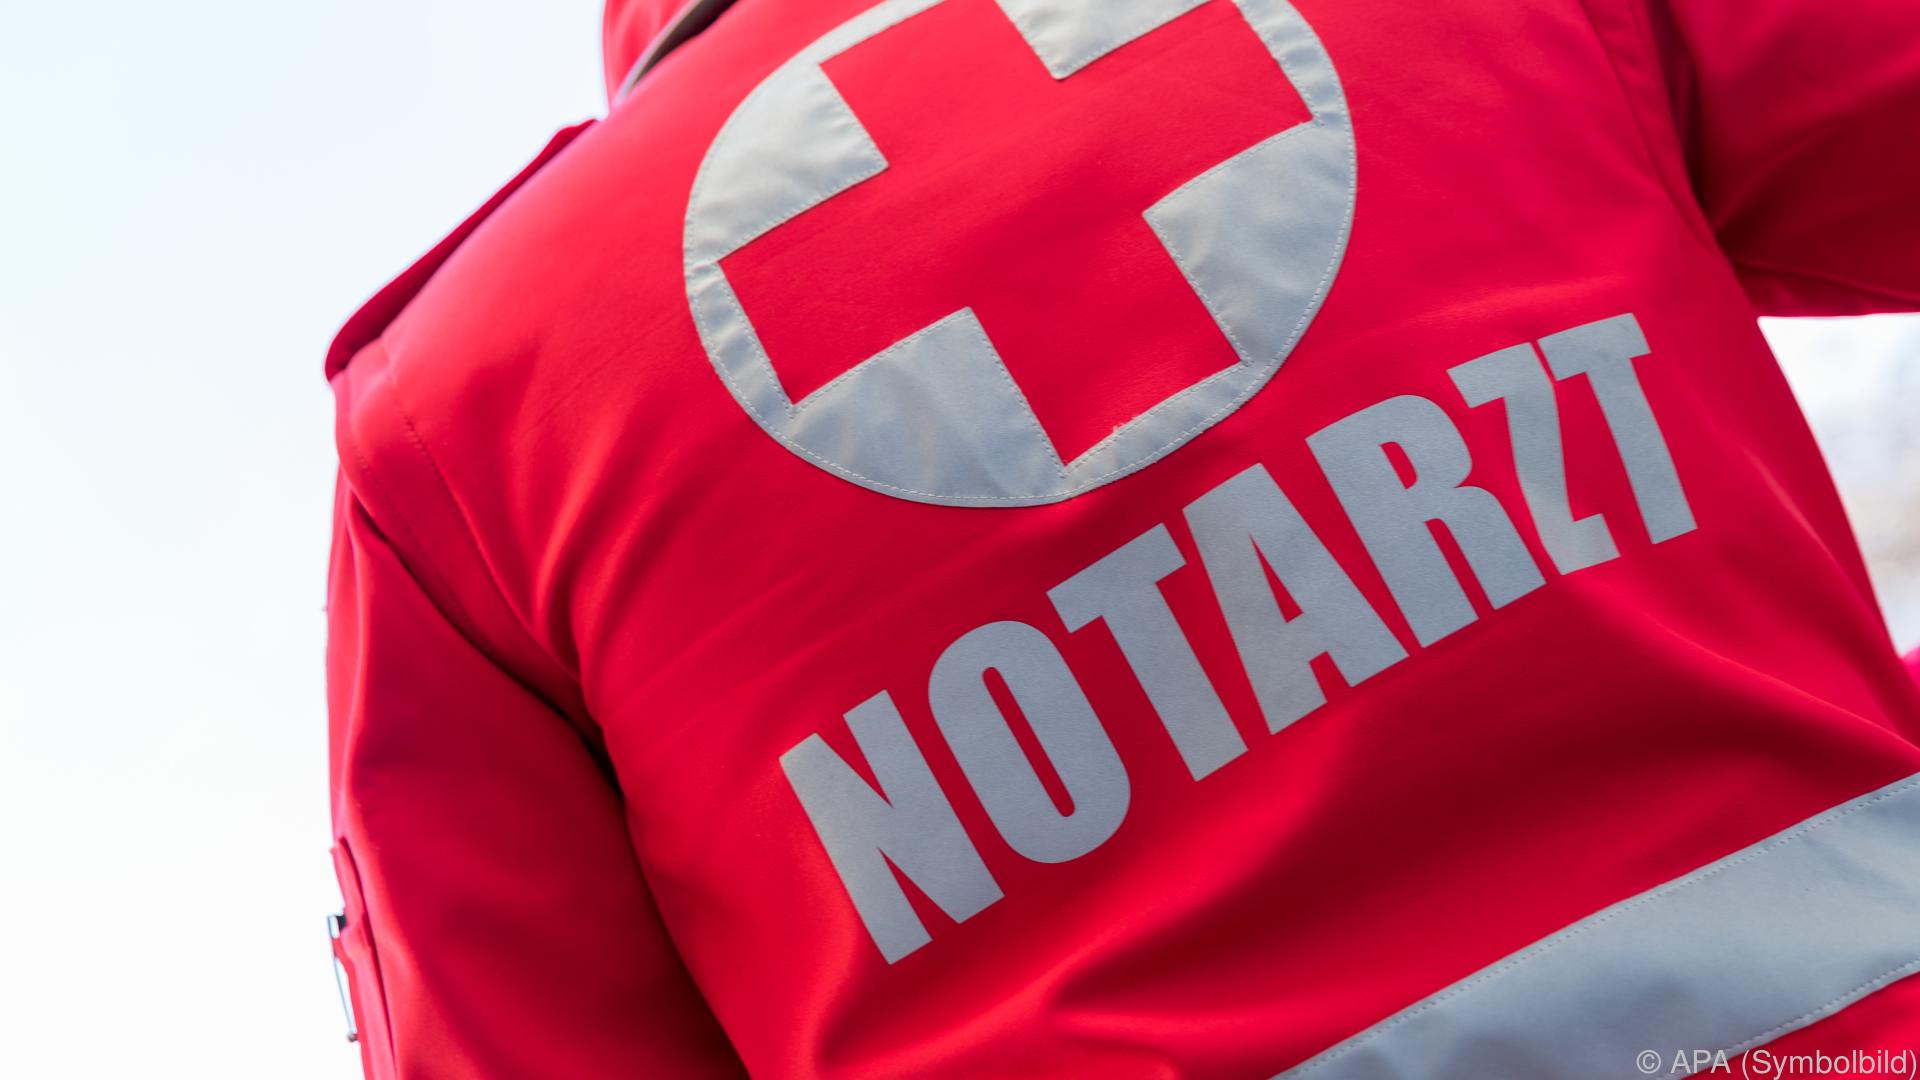 Tirol: Radfahrer bei Kollision mit Auto schwer verletzt